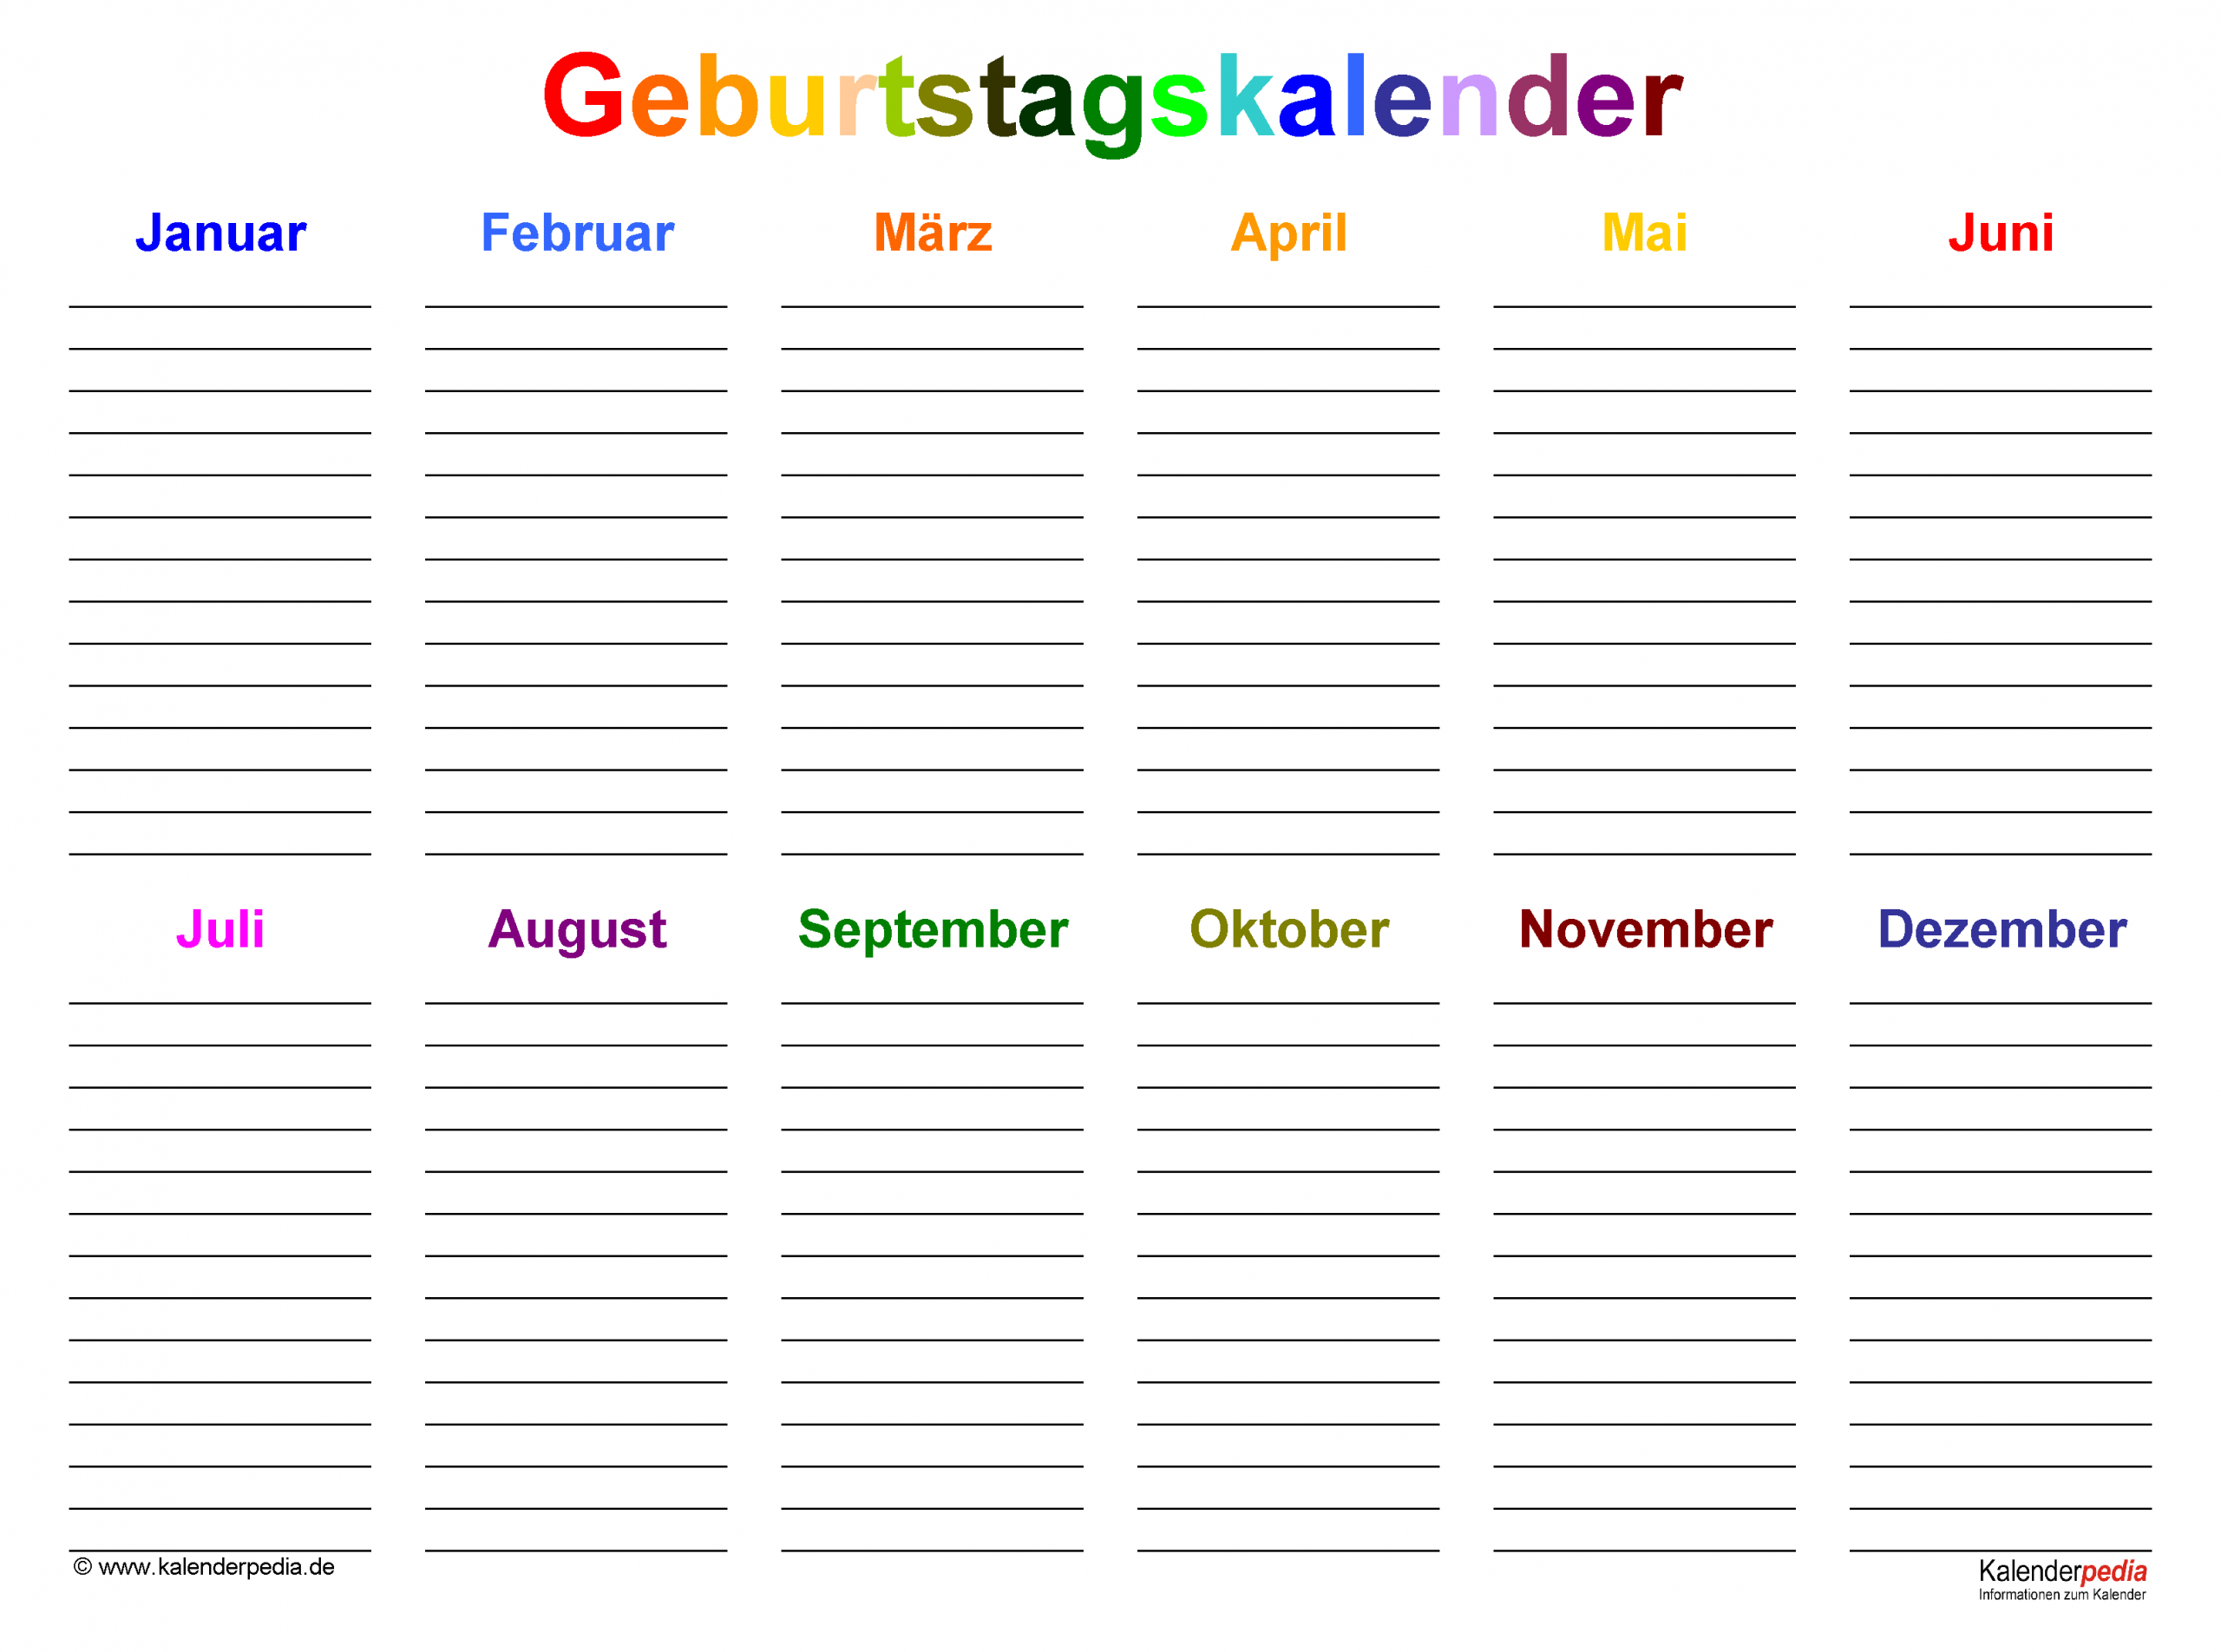 Geburtstagskalender In Excel Zum Ausdrucken (10 Varianten) verwandt mit Geburtstagskalender Vorlage